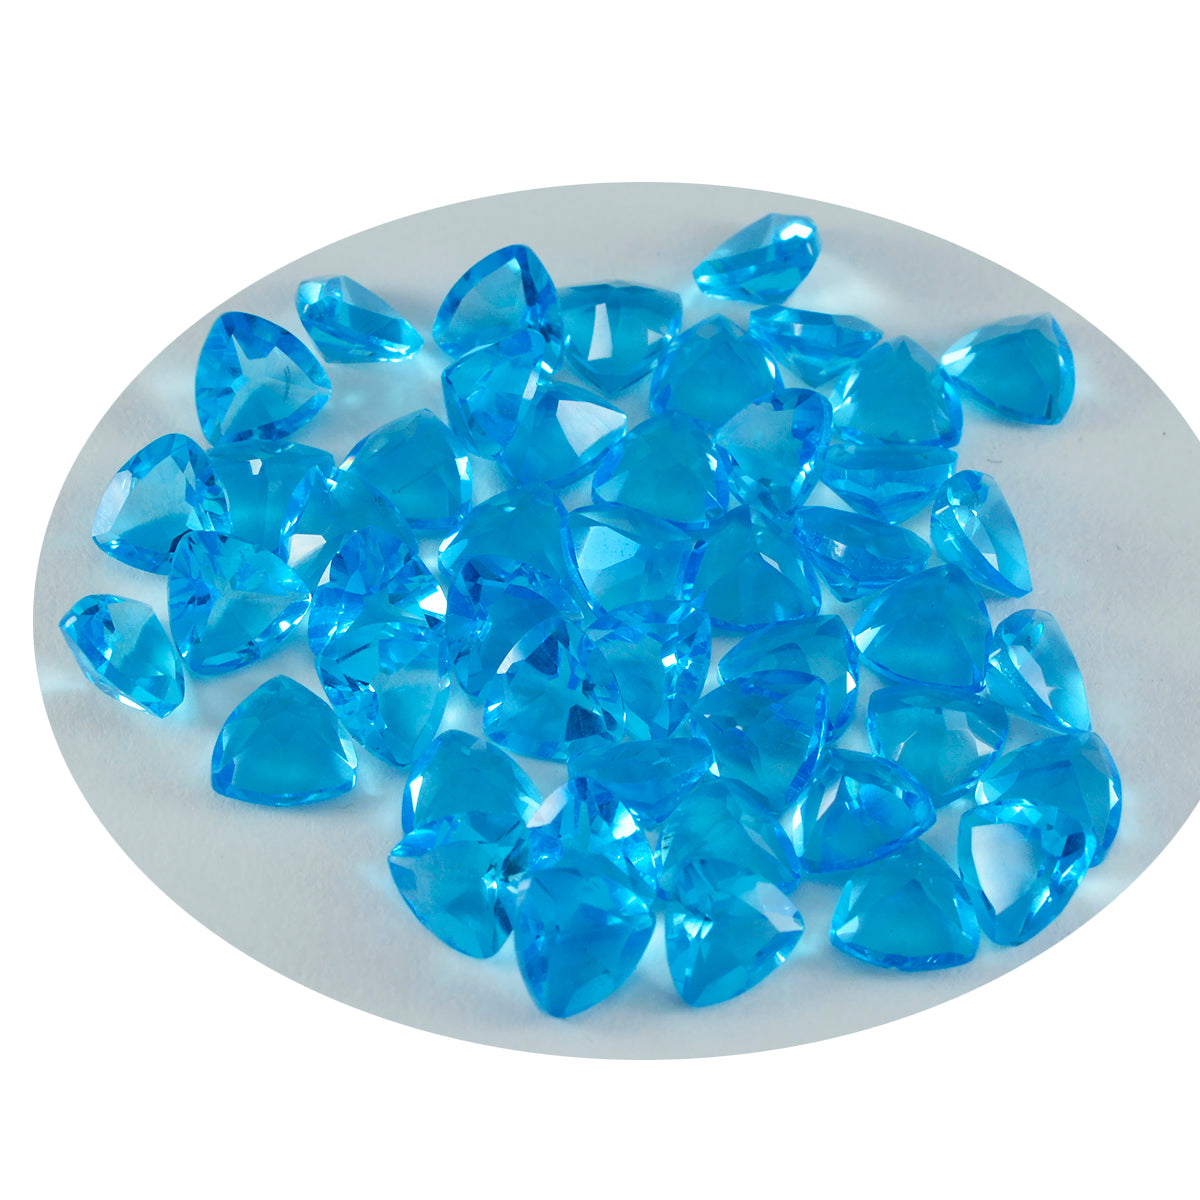 riyogems 1 шт. синий топаз cz граненый 7x7 мм форма триллион замечательное качество свободный камень